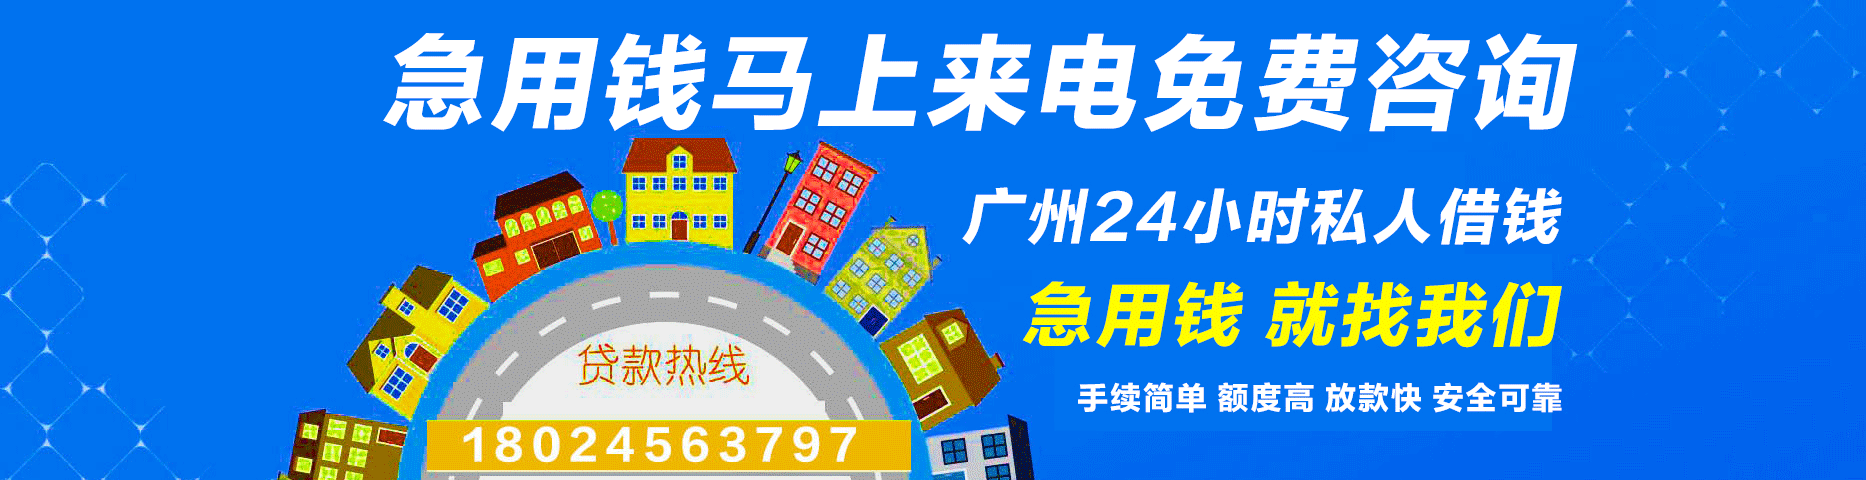 广州私人借款-广州24小时私人借钱空放贷款上门放款